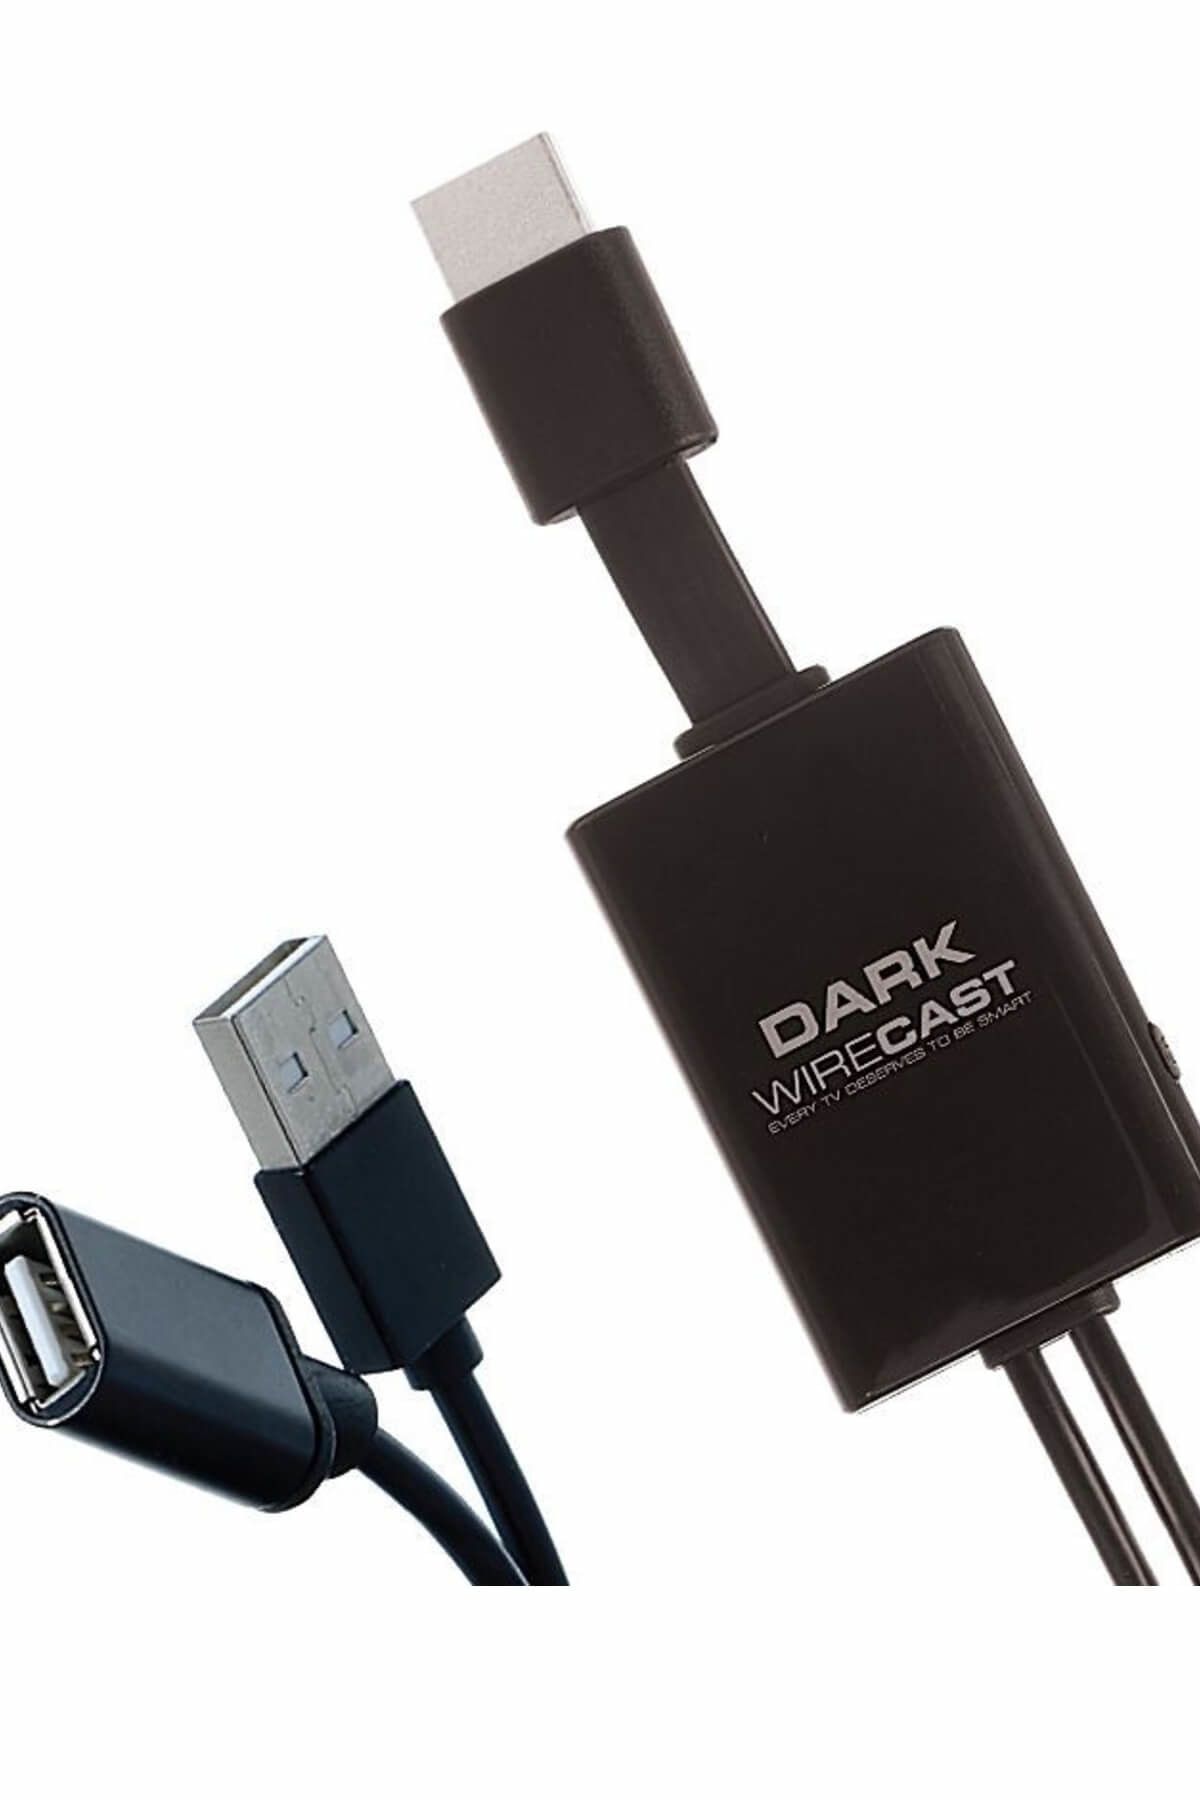 Dark WireCast Android - IOS Uyumlu HDMI Görüntü Aktarım Kablosu DK-HD-WRCAST